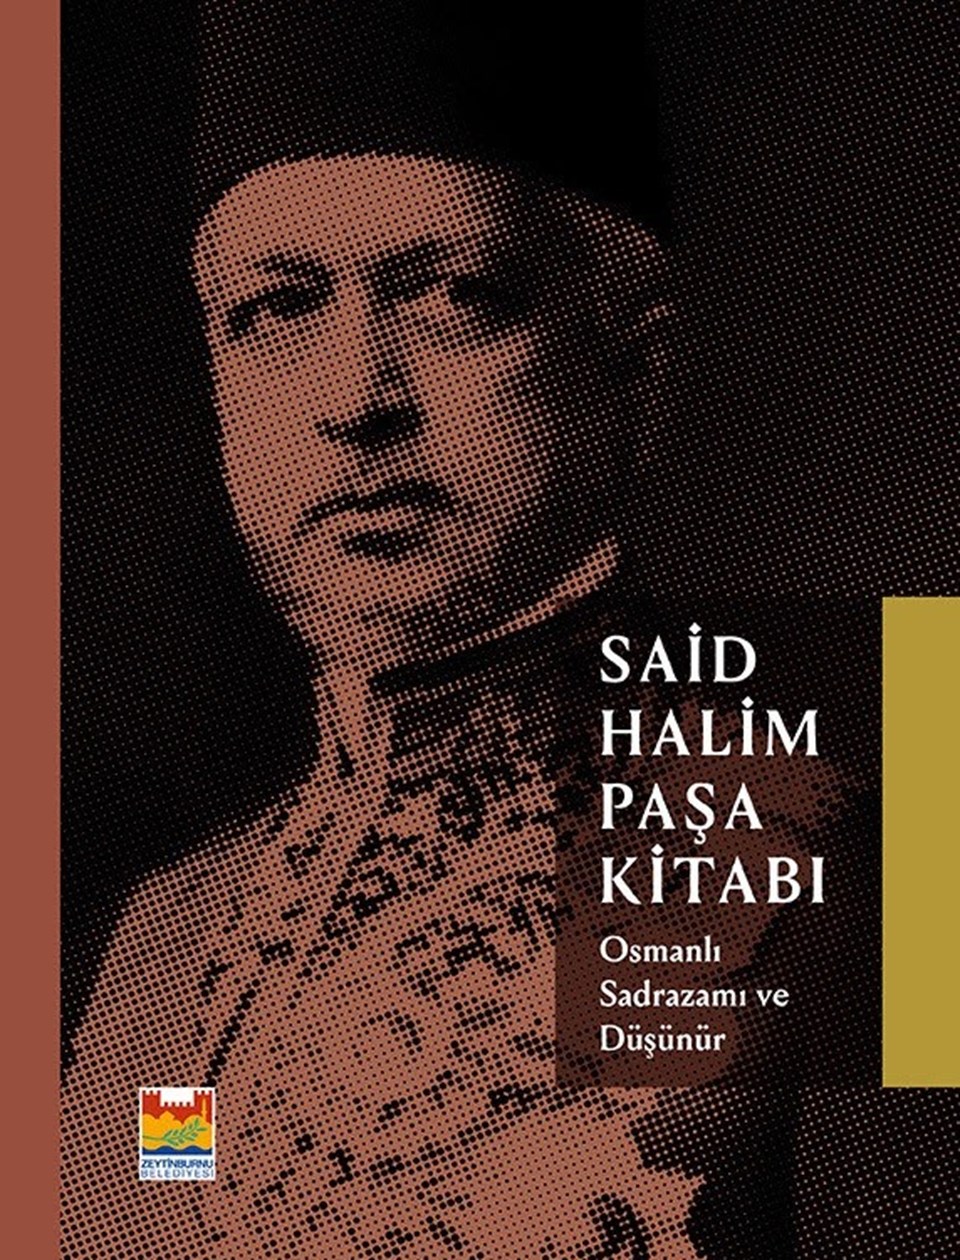 Osmanlı Sadrazamı ve Düşünür Said Halim Paşa kitabı okuyucuyla buluştu - 1